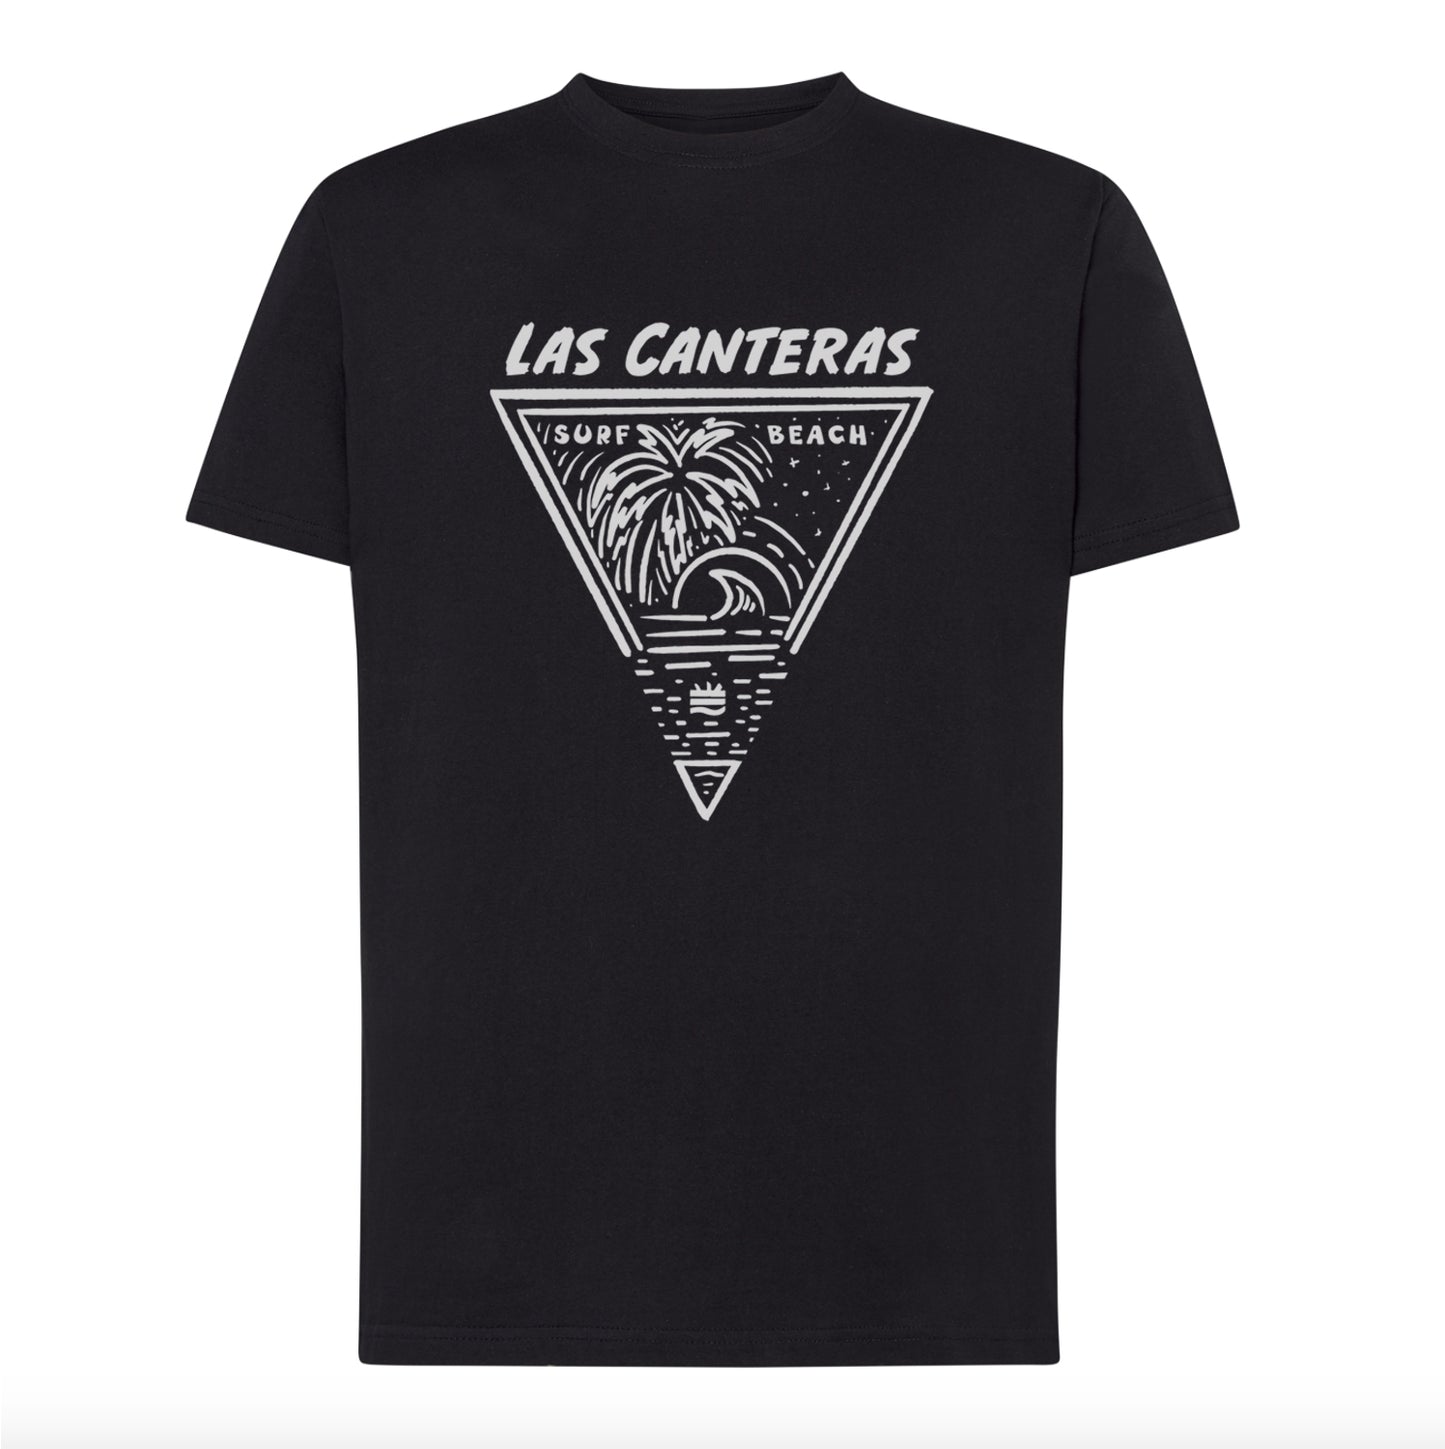 Camiseta corte regular ''Las Canteras''